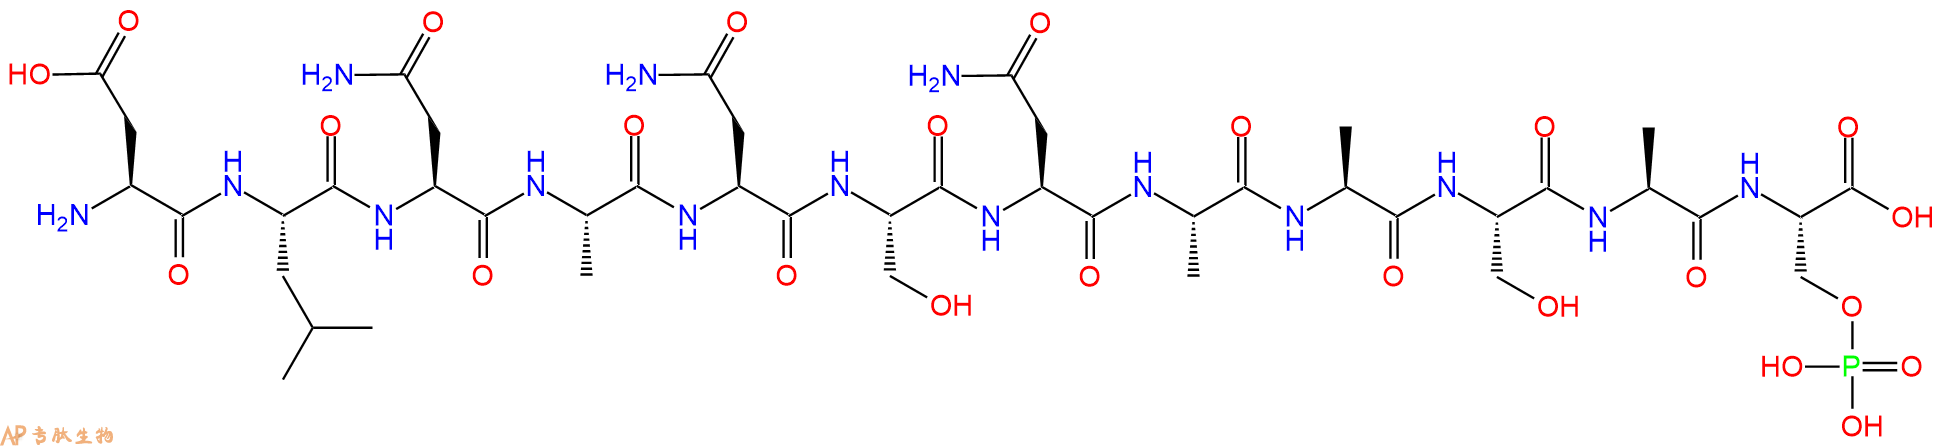 专肽生物产品磷酸化肽(Ser(PO₃H₂)³²³)-Hrr25 (312-323)2243207-04-5